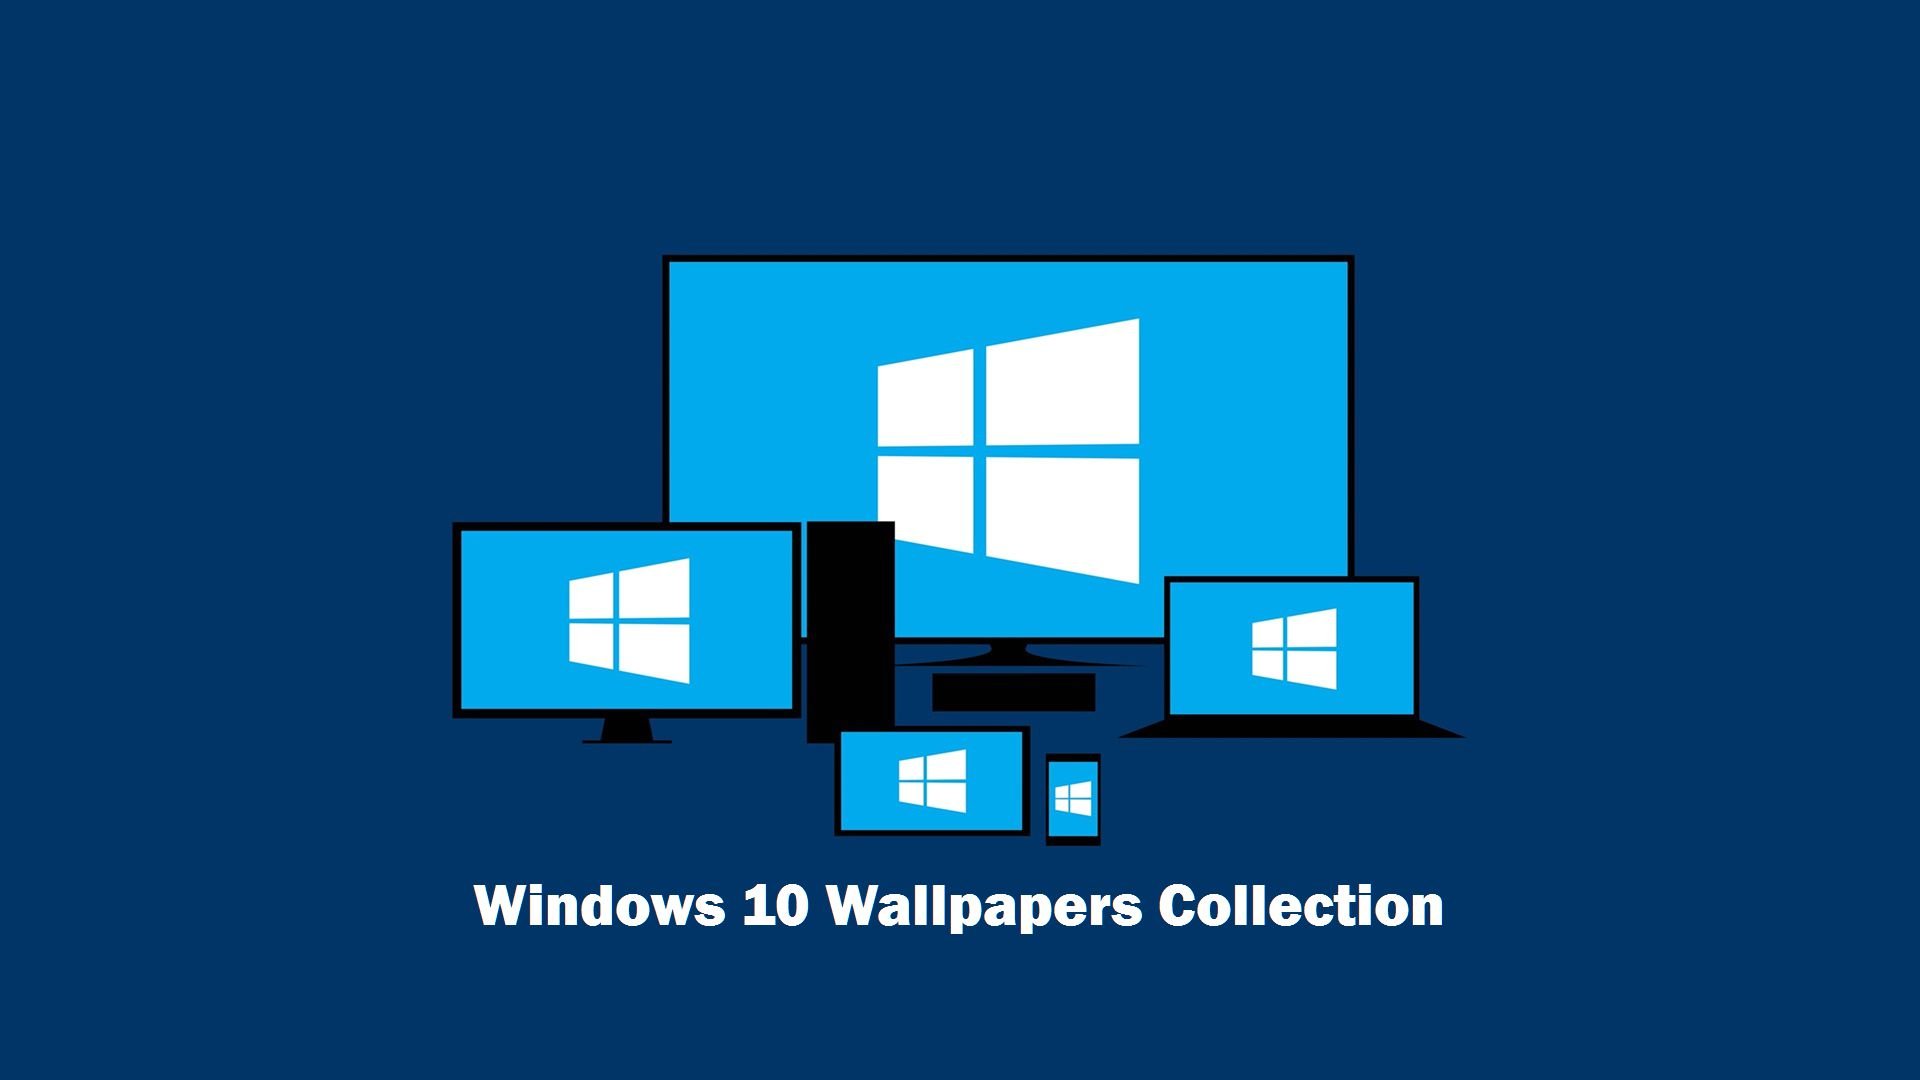 Windows 10 Wallpaper 1024 , HD Wallpaper & Backgrounds